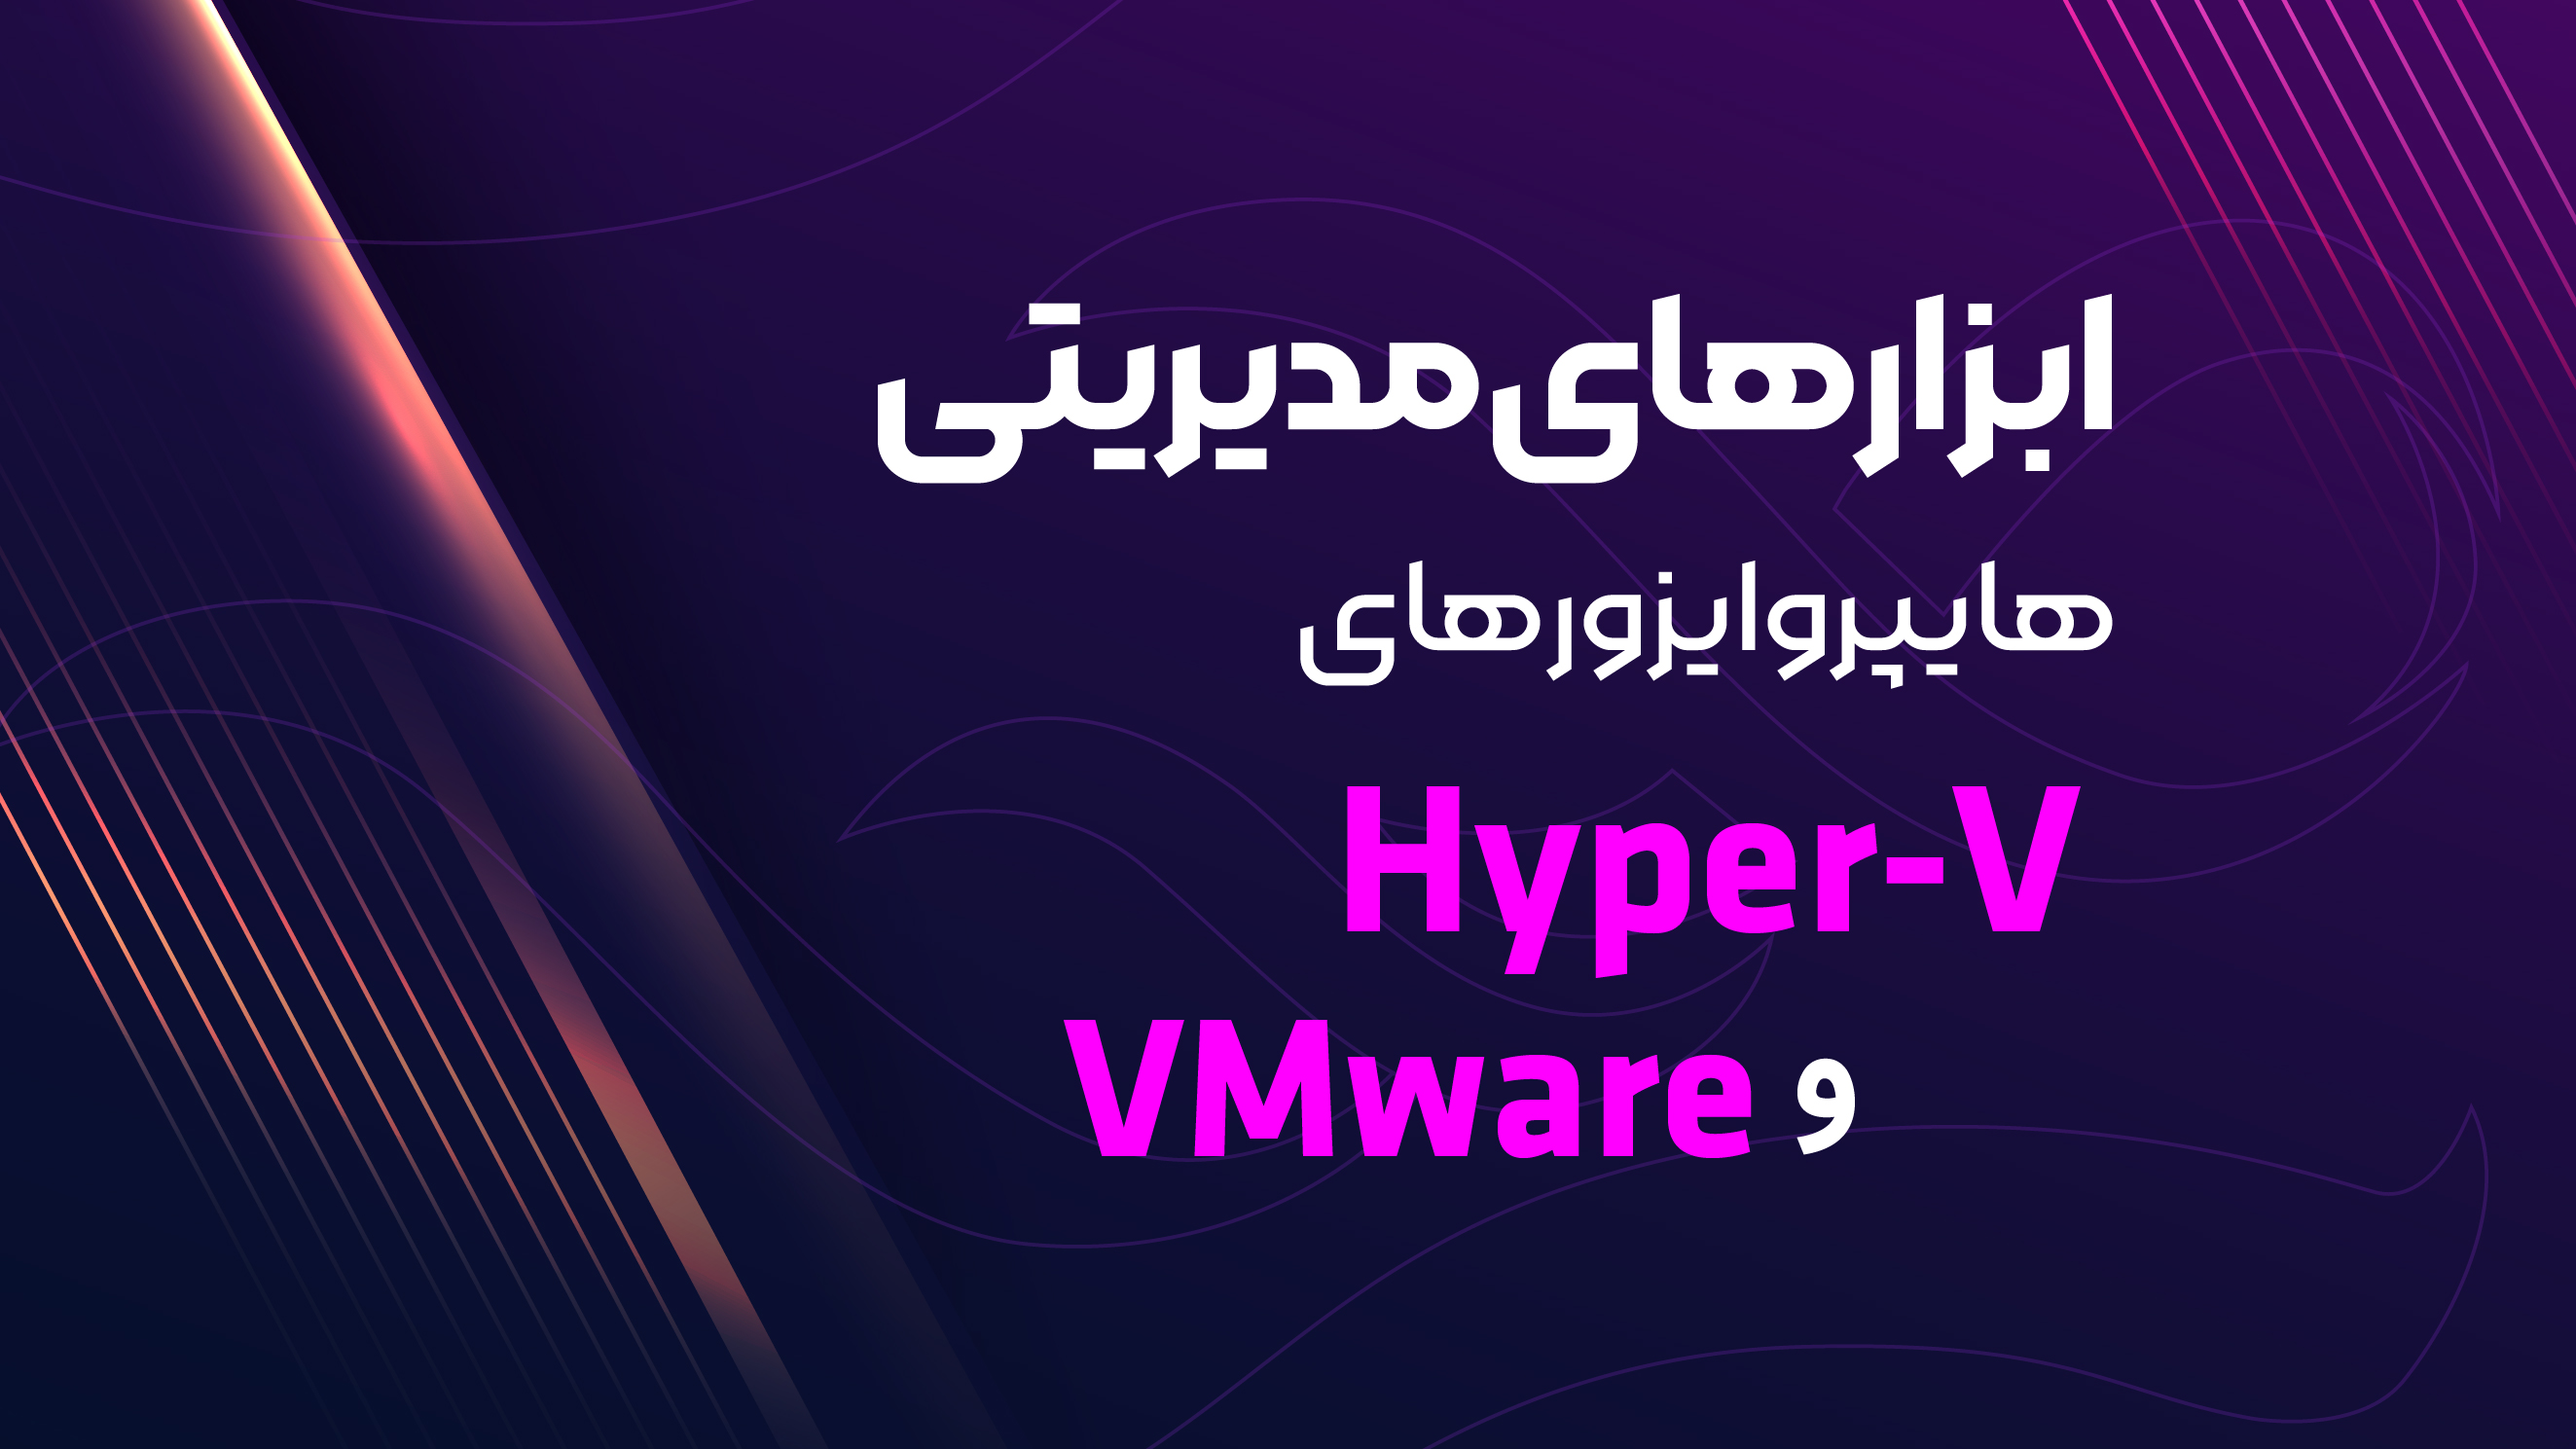 ابزارهای مدیریتی هایپروایزور های VMware و Hyper-V